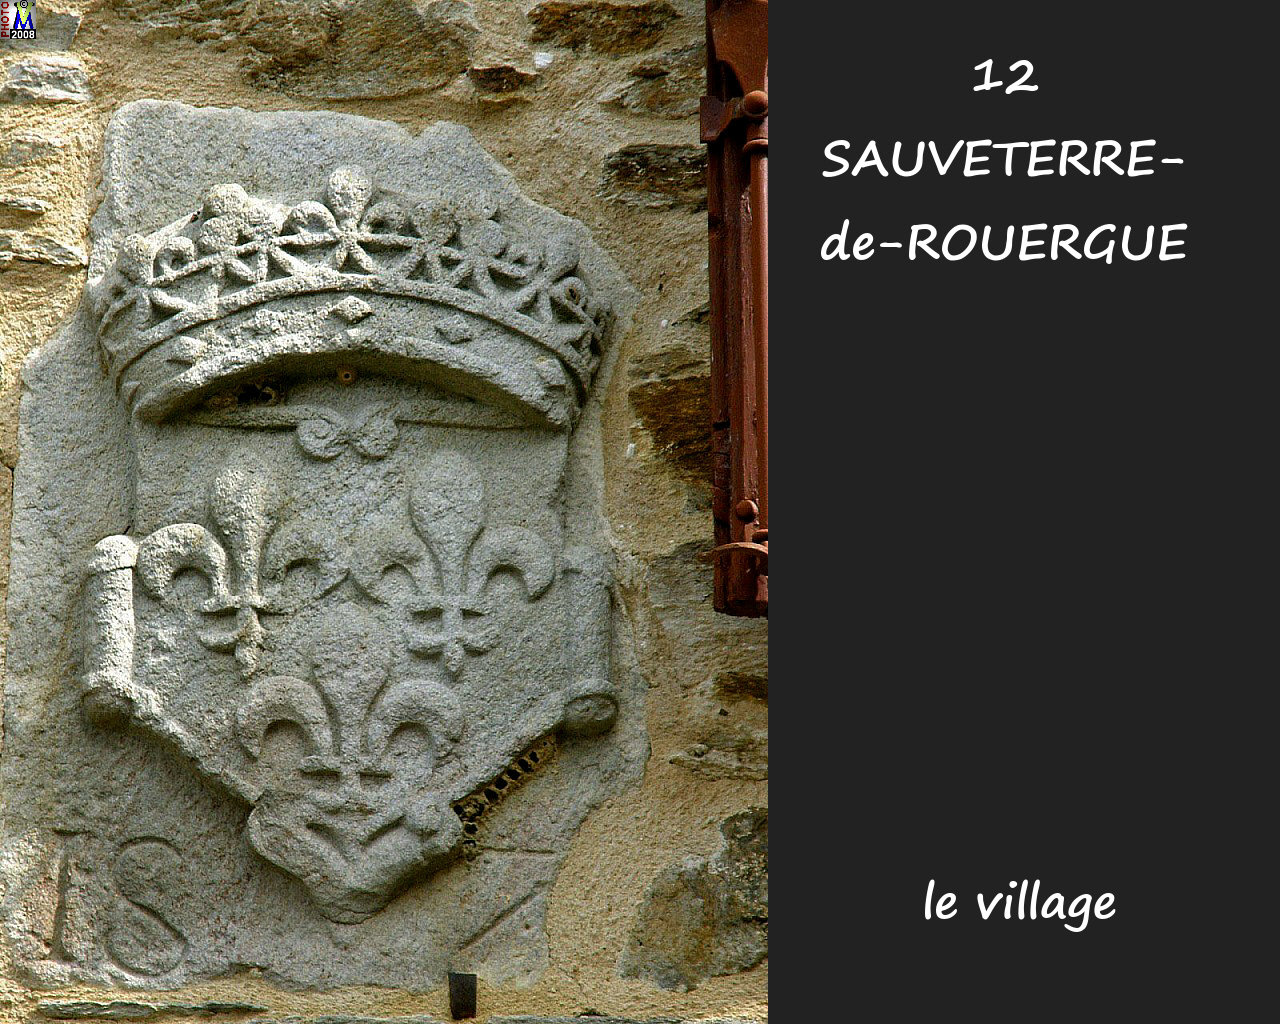 12SAUVETERRE-ROUERGUE_village_166.jpg